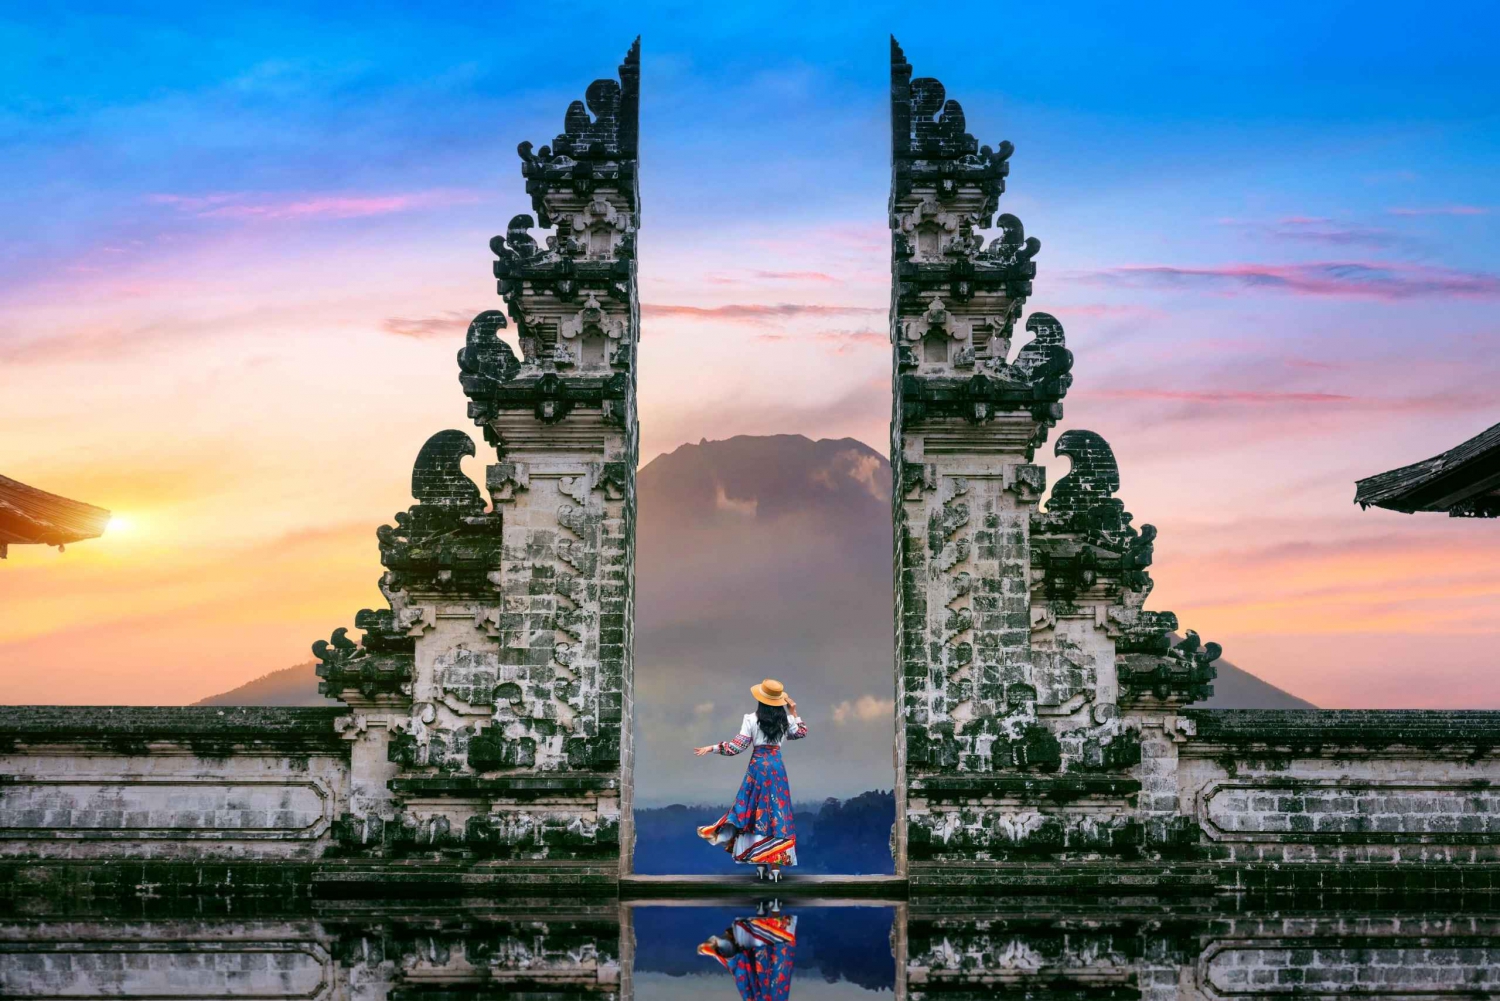 From Bali : Lempuyang temple, Tirta gangga, taman ujung